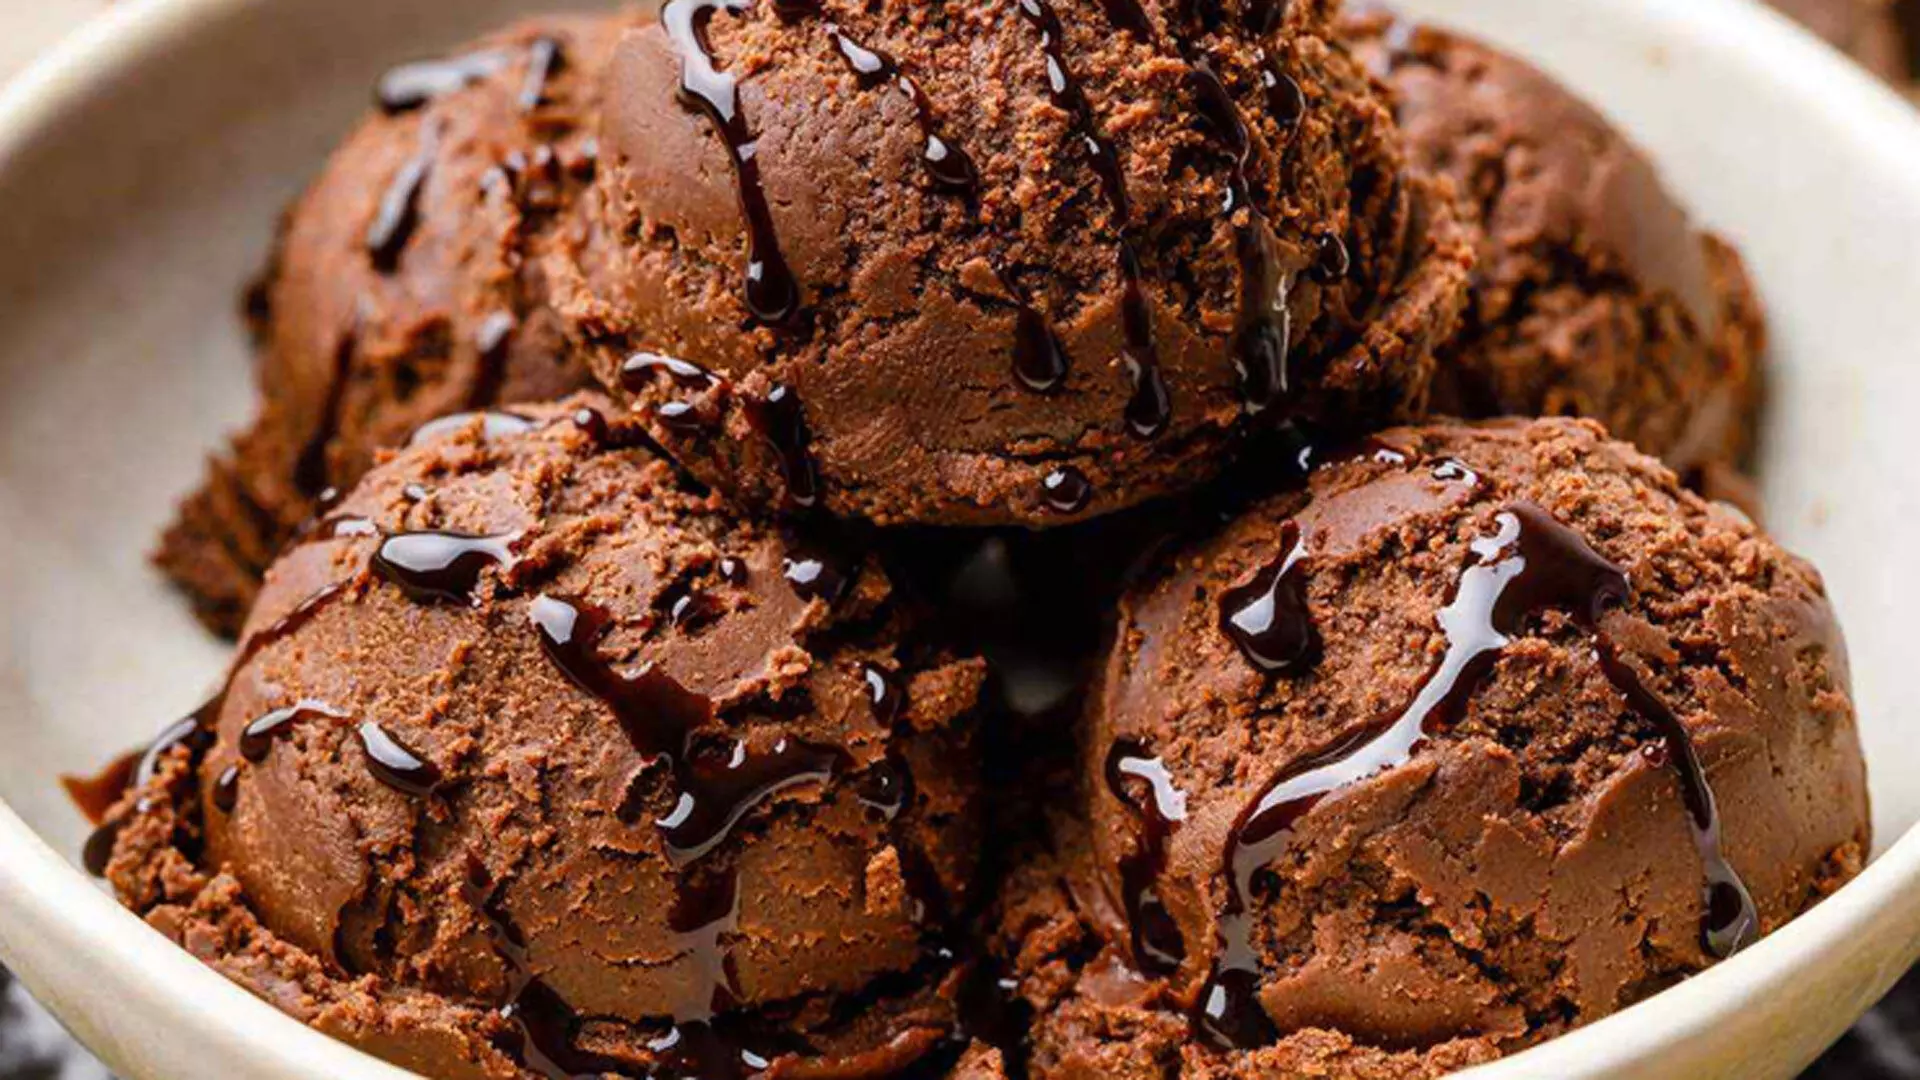 शाम के नाश्ते के लिए चॉकलेट आइसक्रीम बनाना आसान